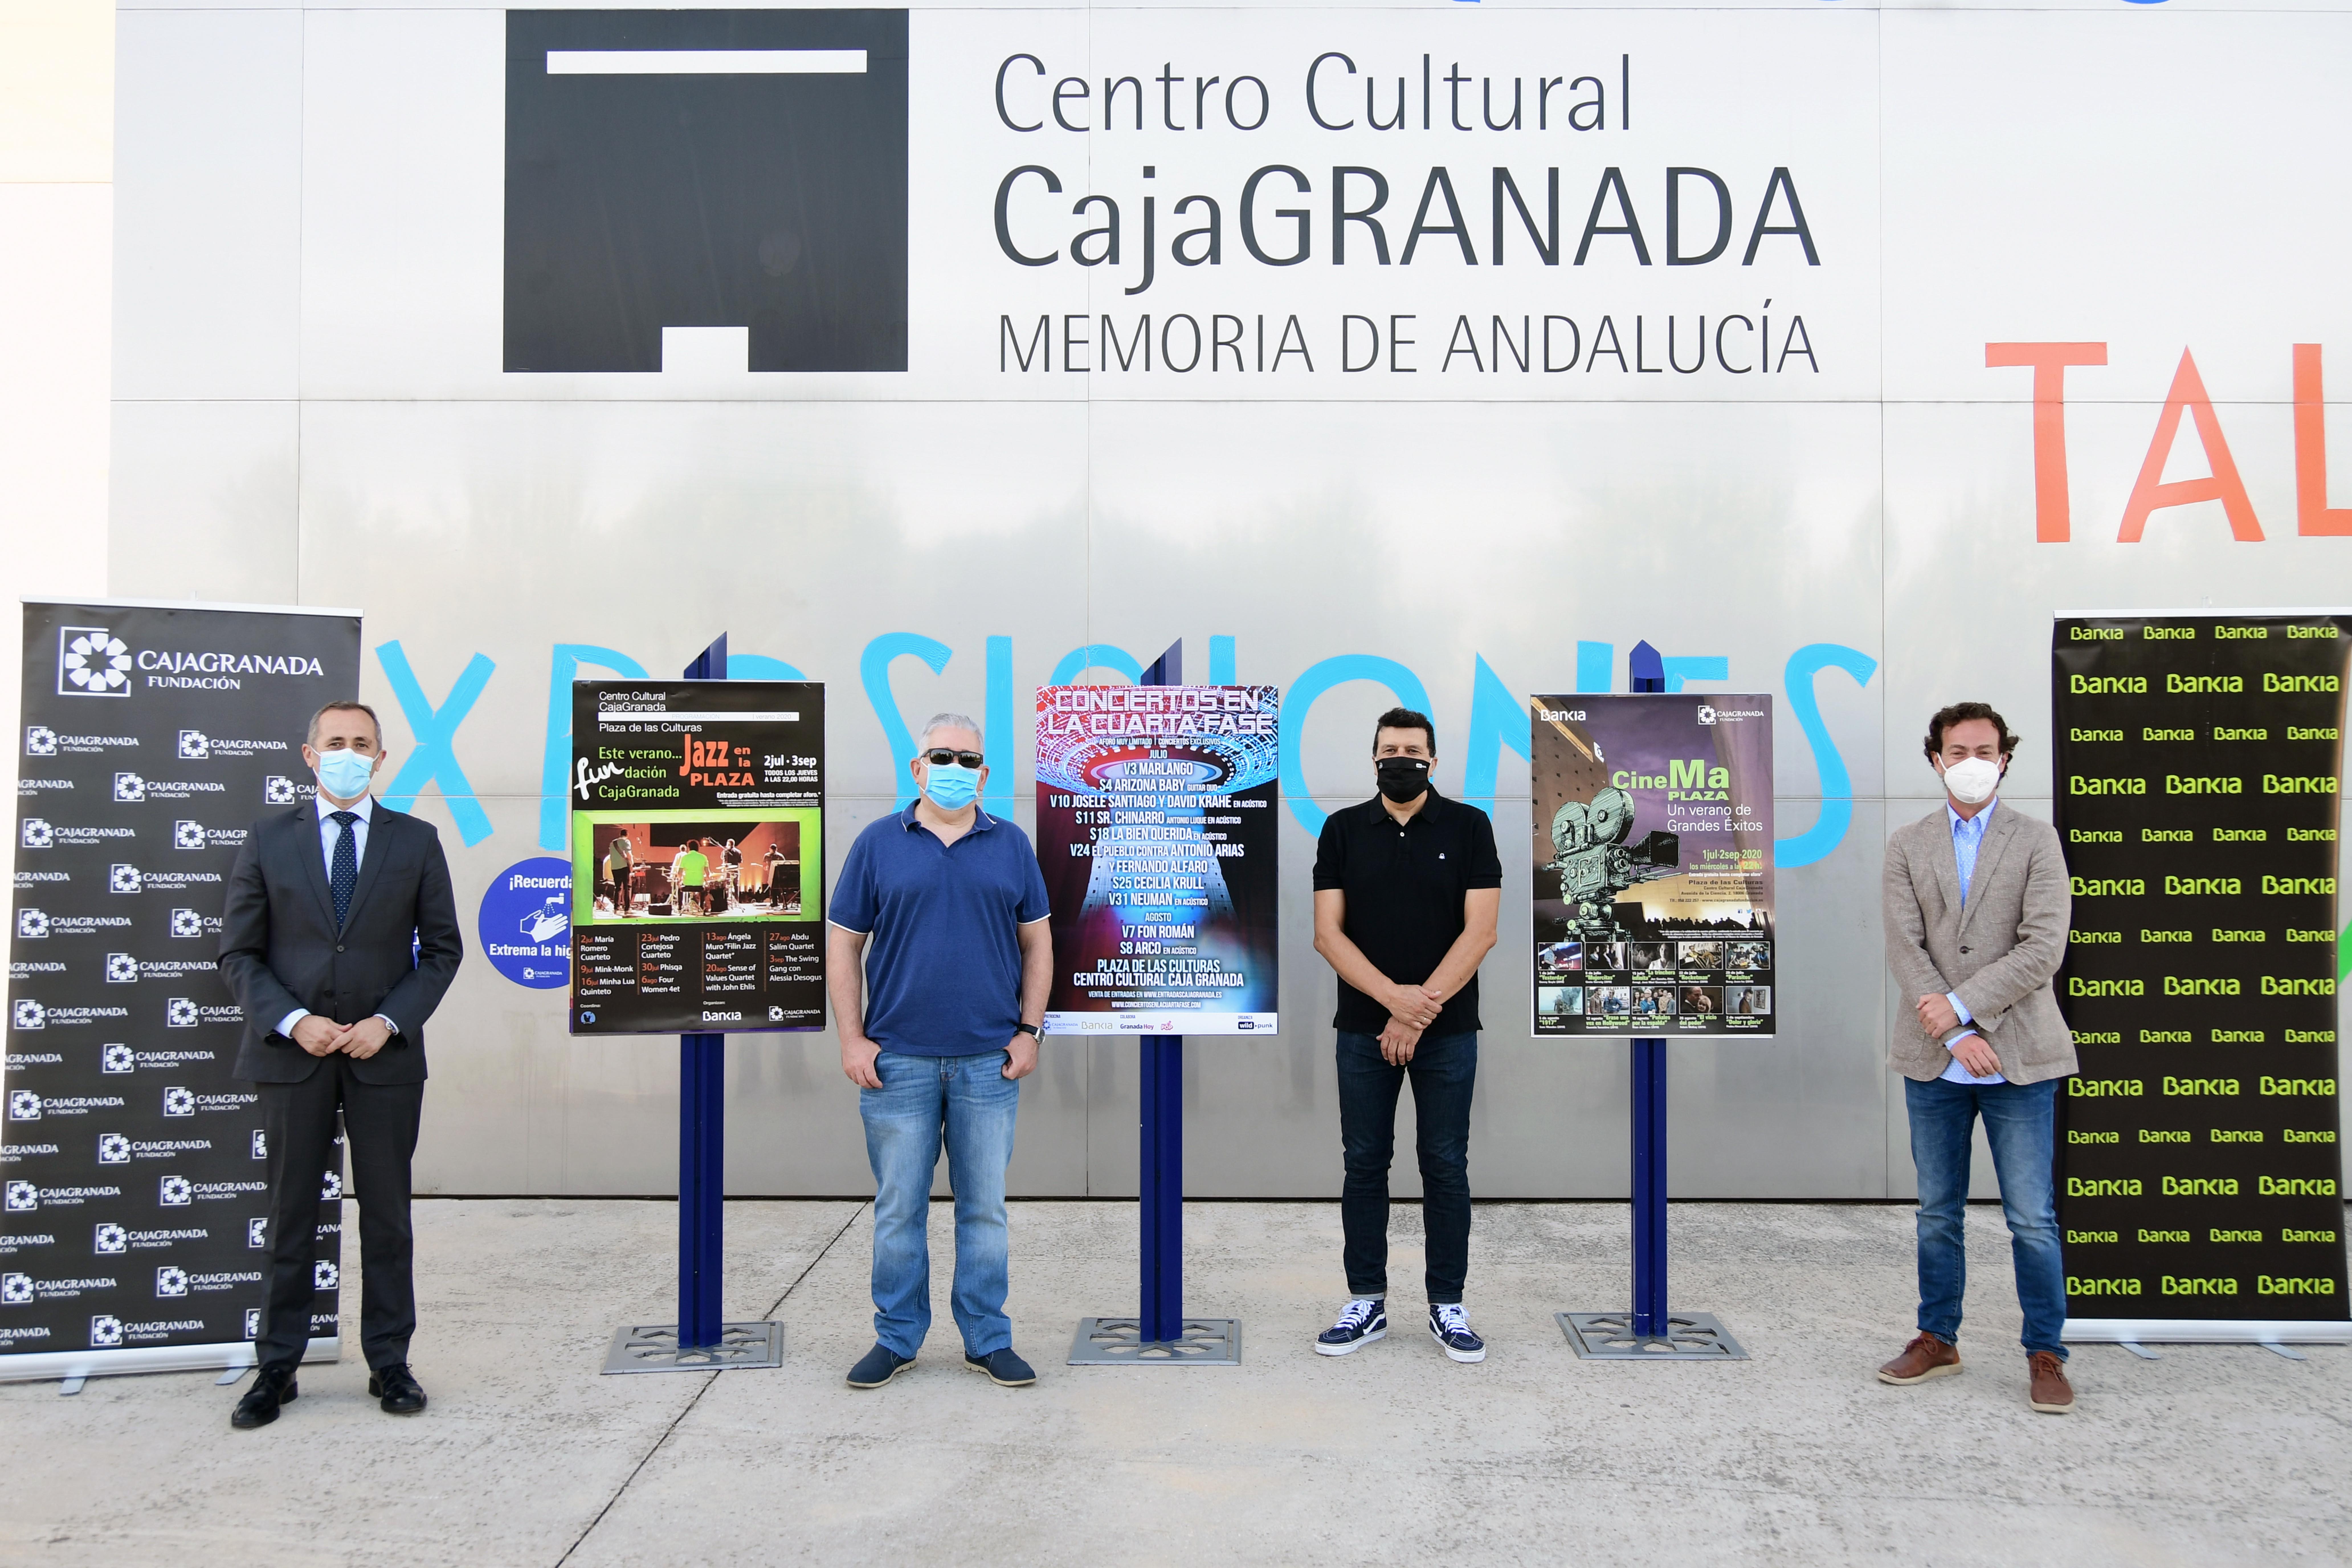 Cuatro ciclos semanales combinarán jazz, cine y pop rock en la Plaza de las Culturas del centro CajaGranada